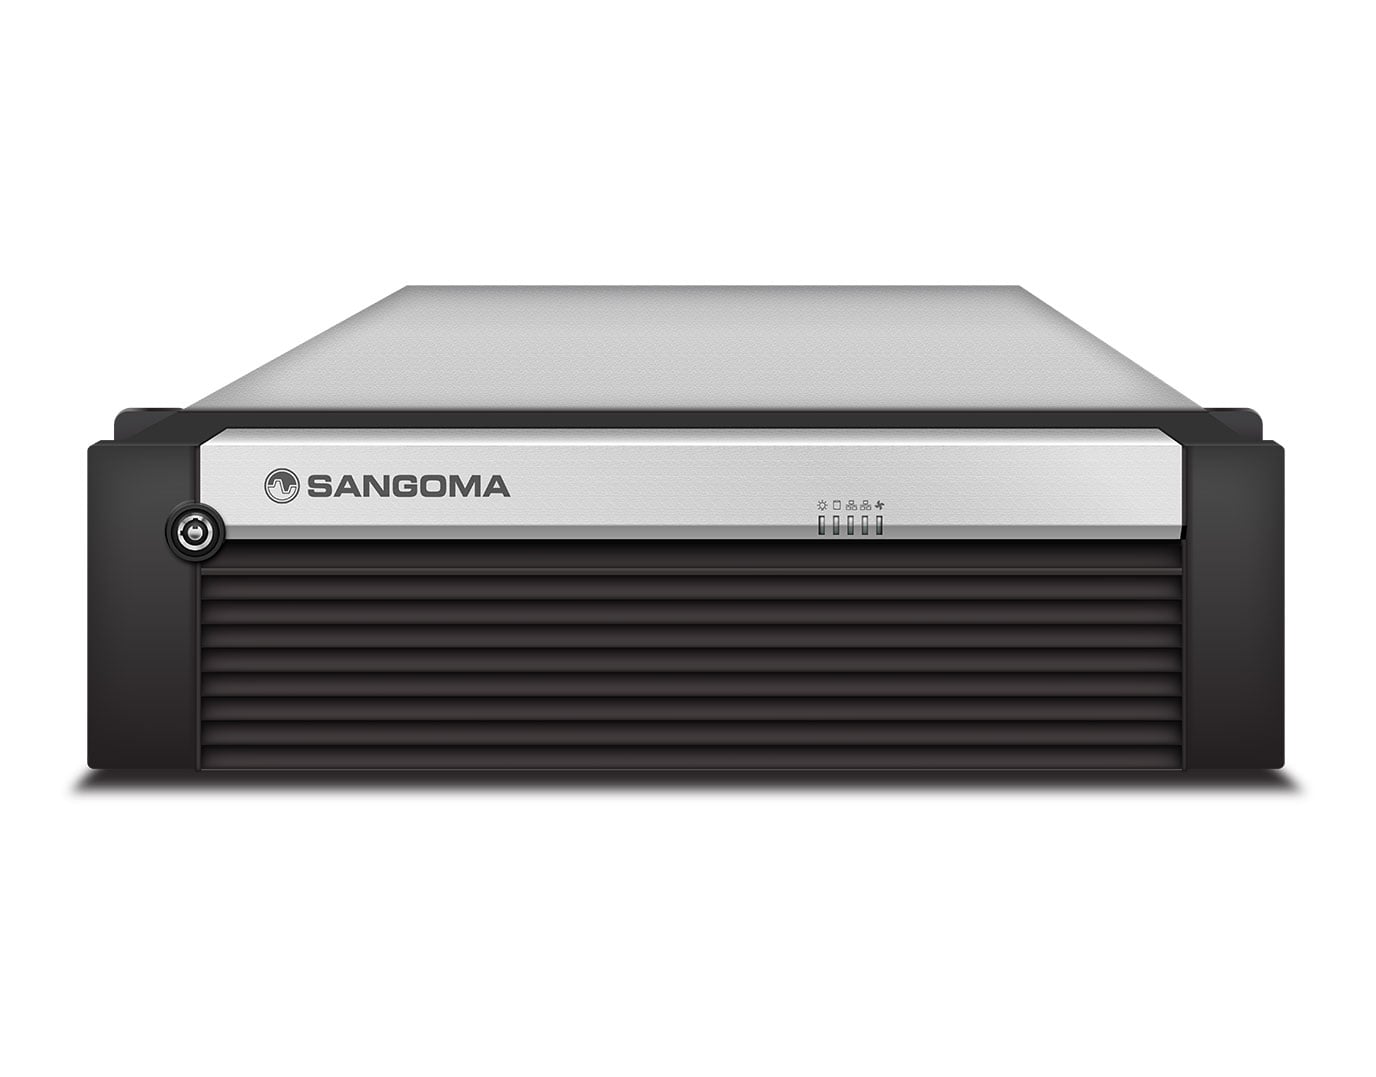 Sangoma PBXact UC 5000 Users Appliance - Rack Mount